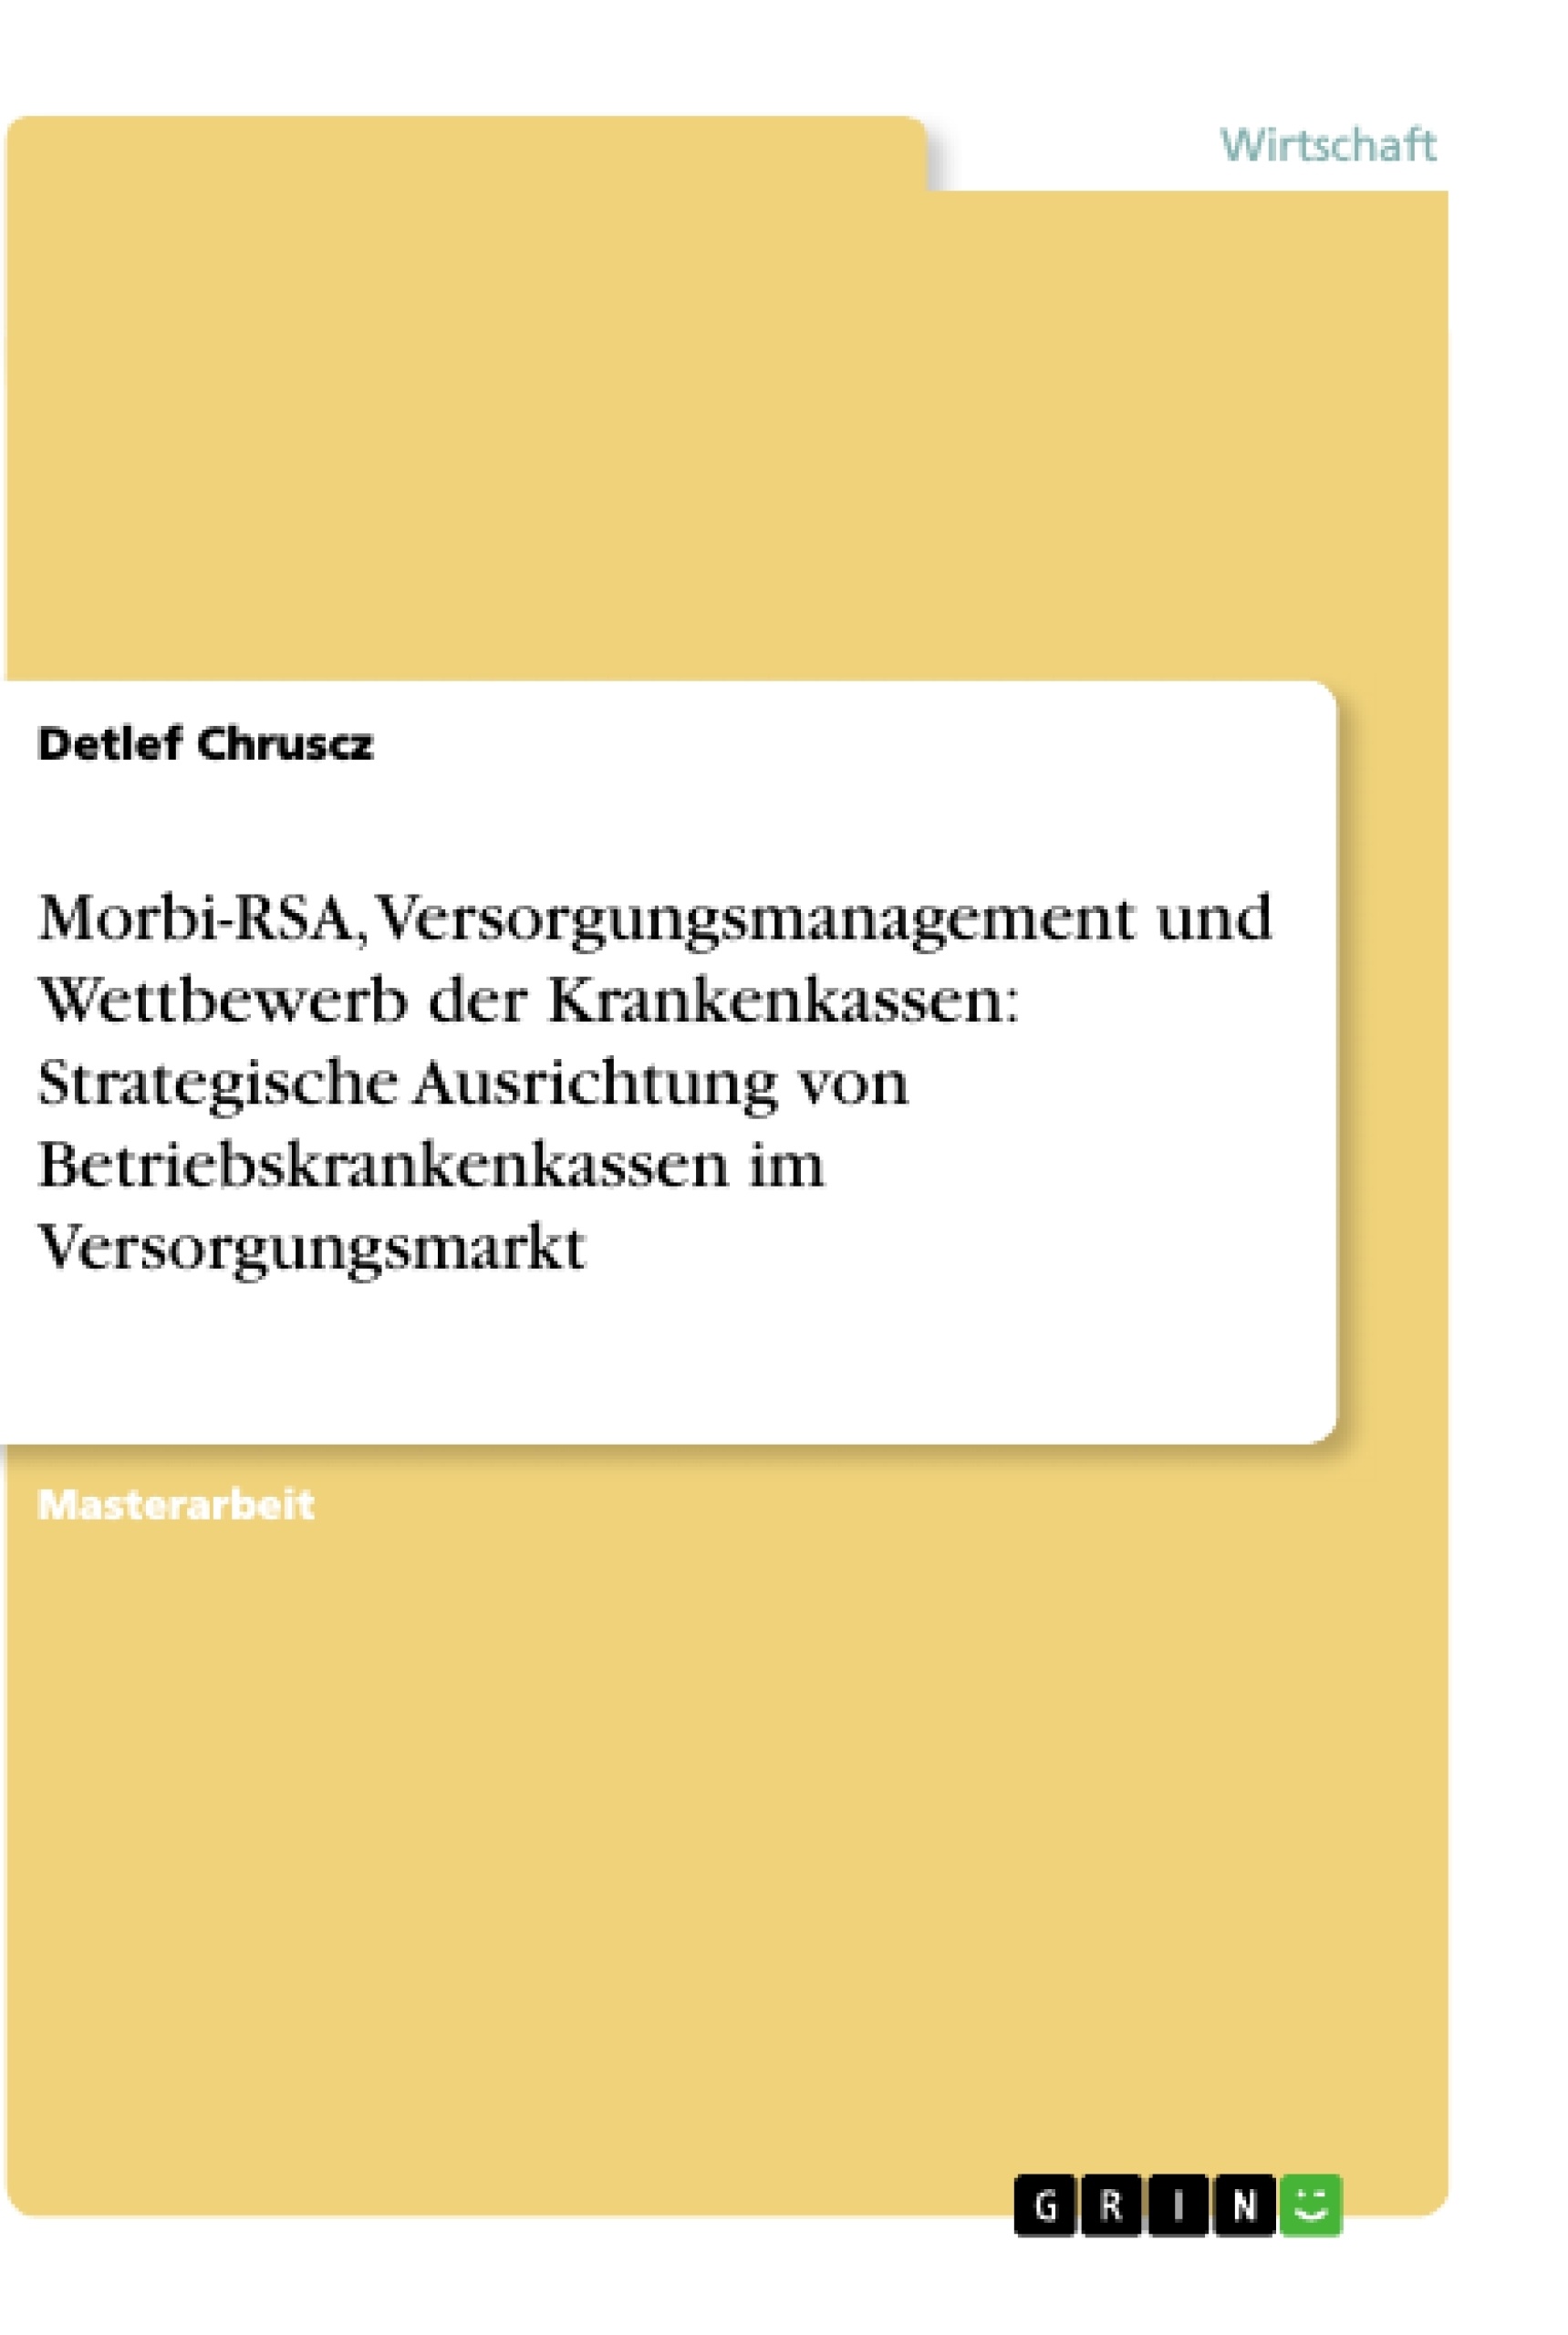 Title: Morbi-RSA, Versorgungsmanagement und Wettbewerb der Krankenkassen: Strategische Ausrichtung von Betriebskrankenkassen im Versorgungsmarkt